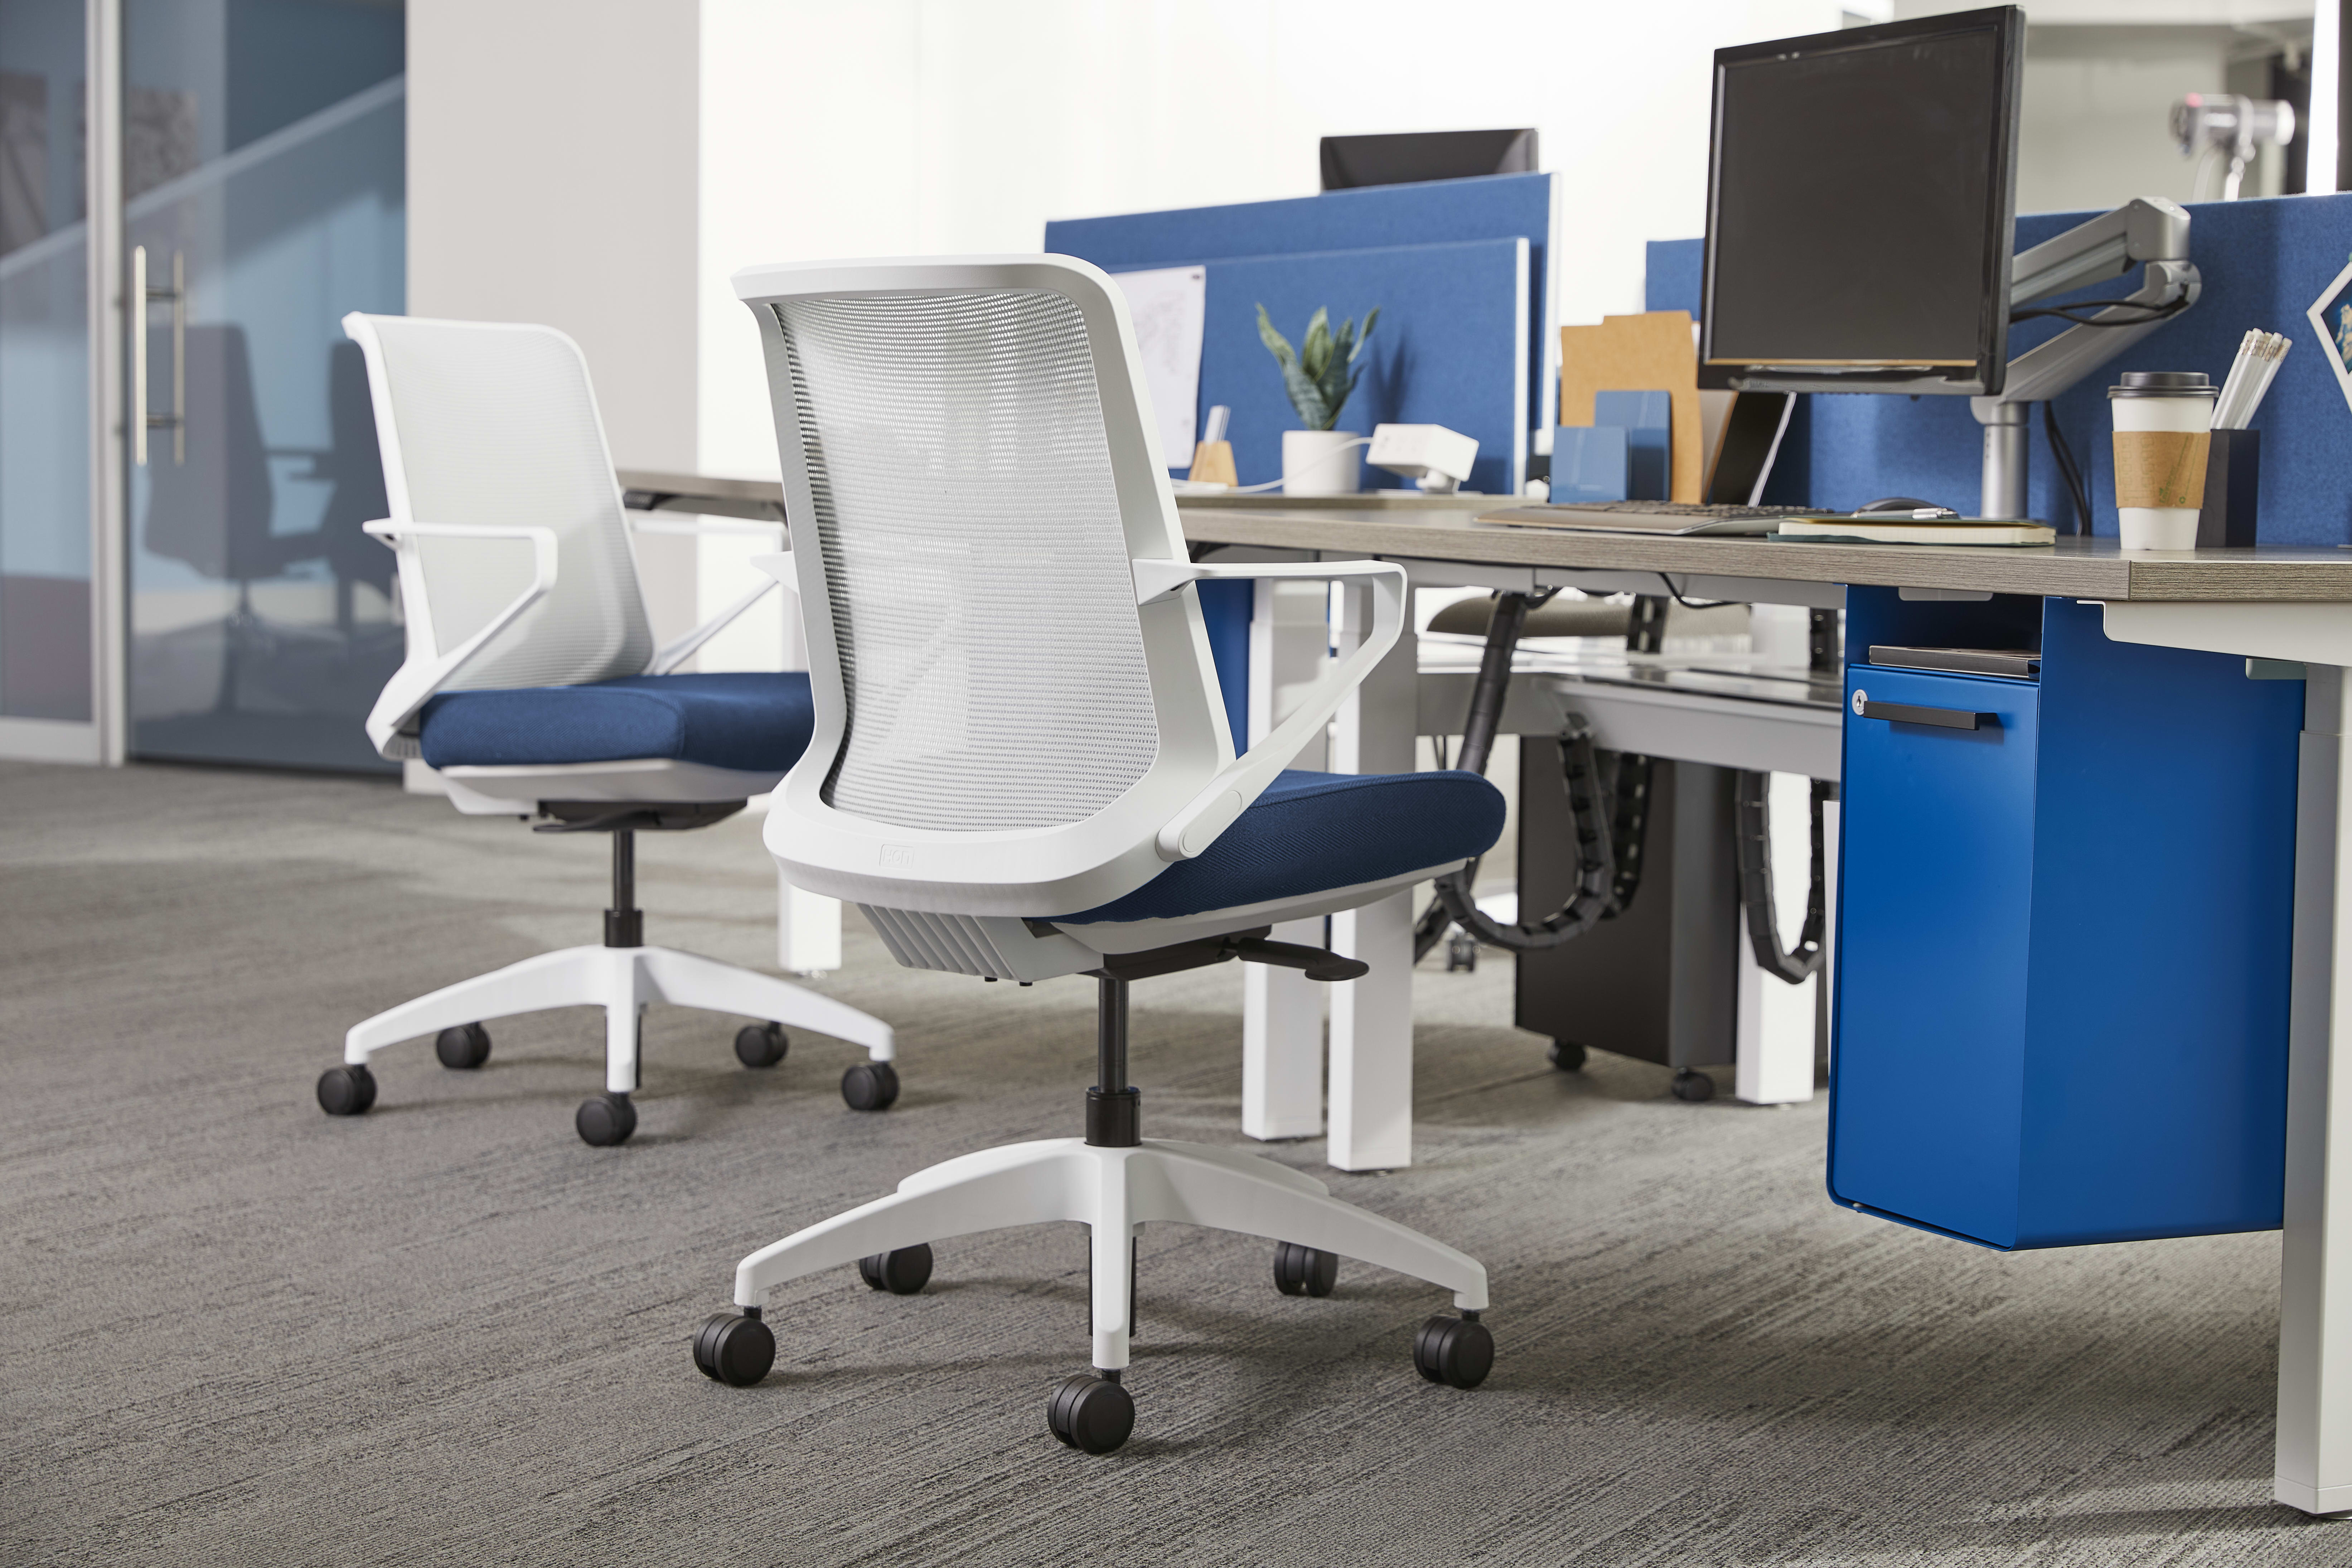 HON Cliq - Office Furniture & Interior Solutions in Grand Rapids